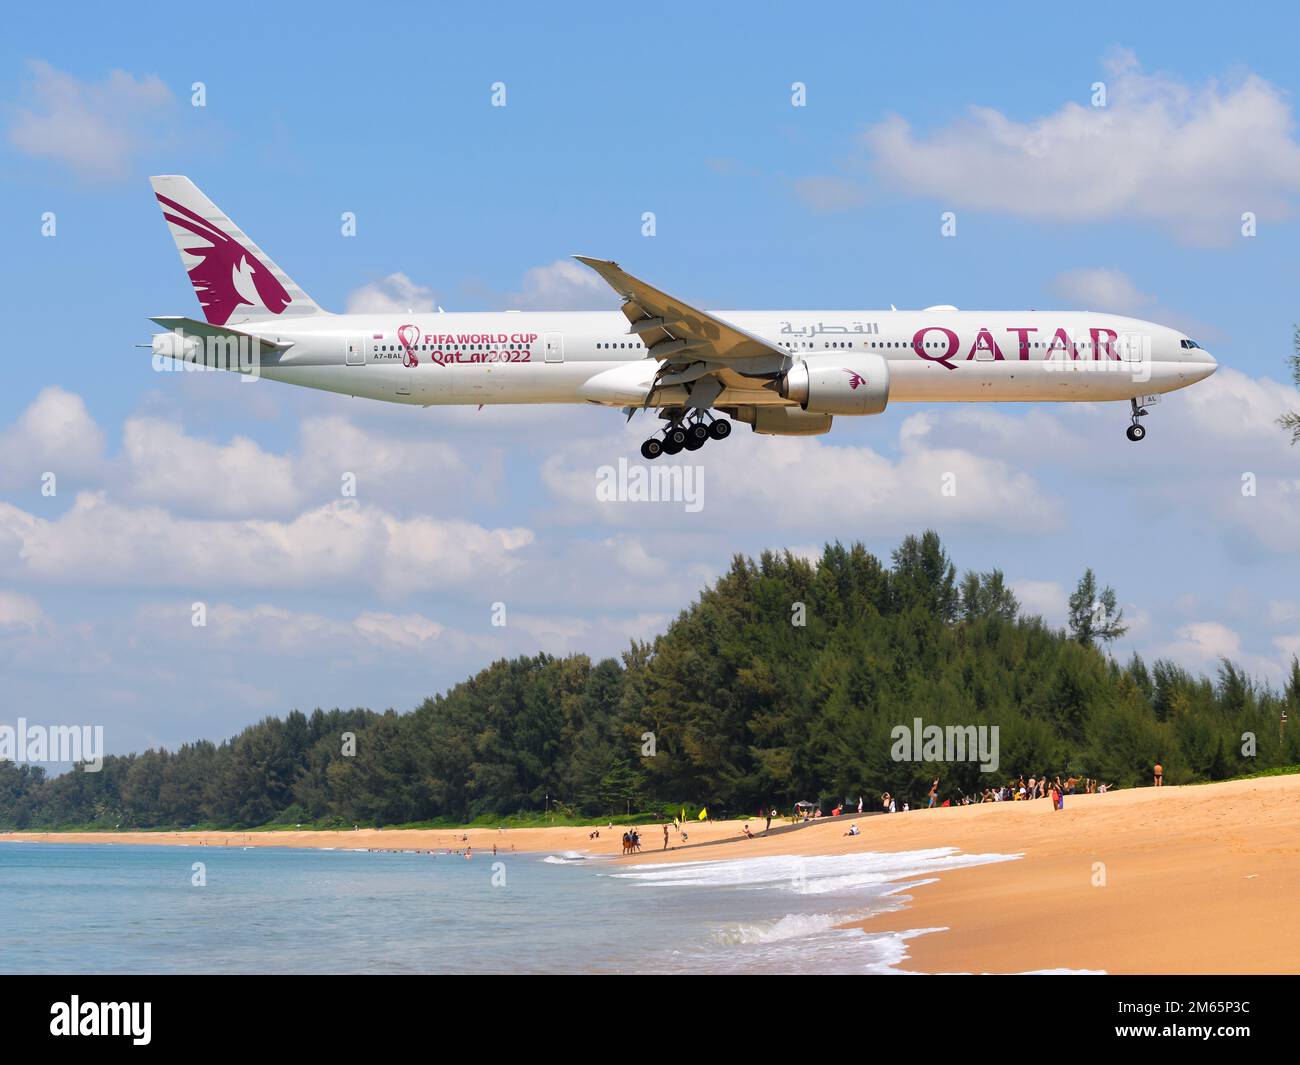 Aereo Qatar Airways Boeing 777 sopra mai Khao Beach. Aereo di Qatar Airways 777-300ER con adesivo Qatar 2022. Foto Stock